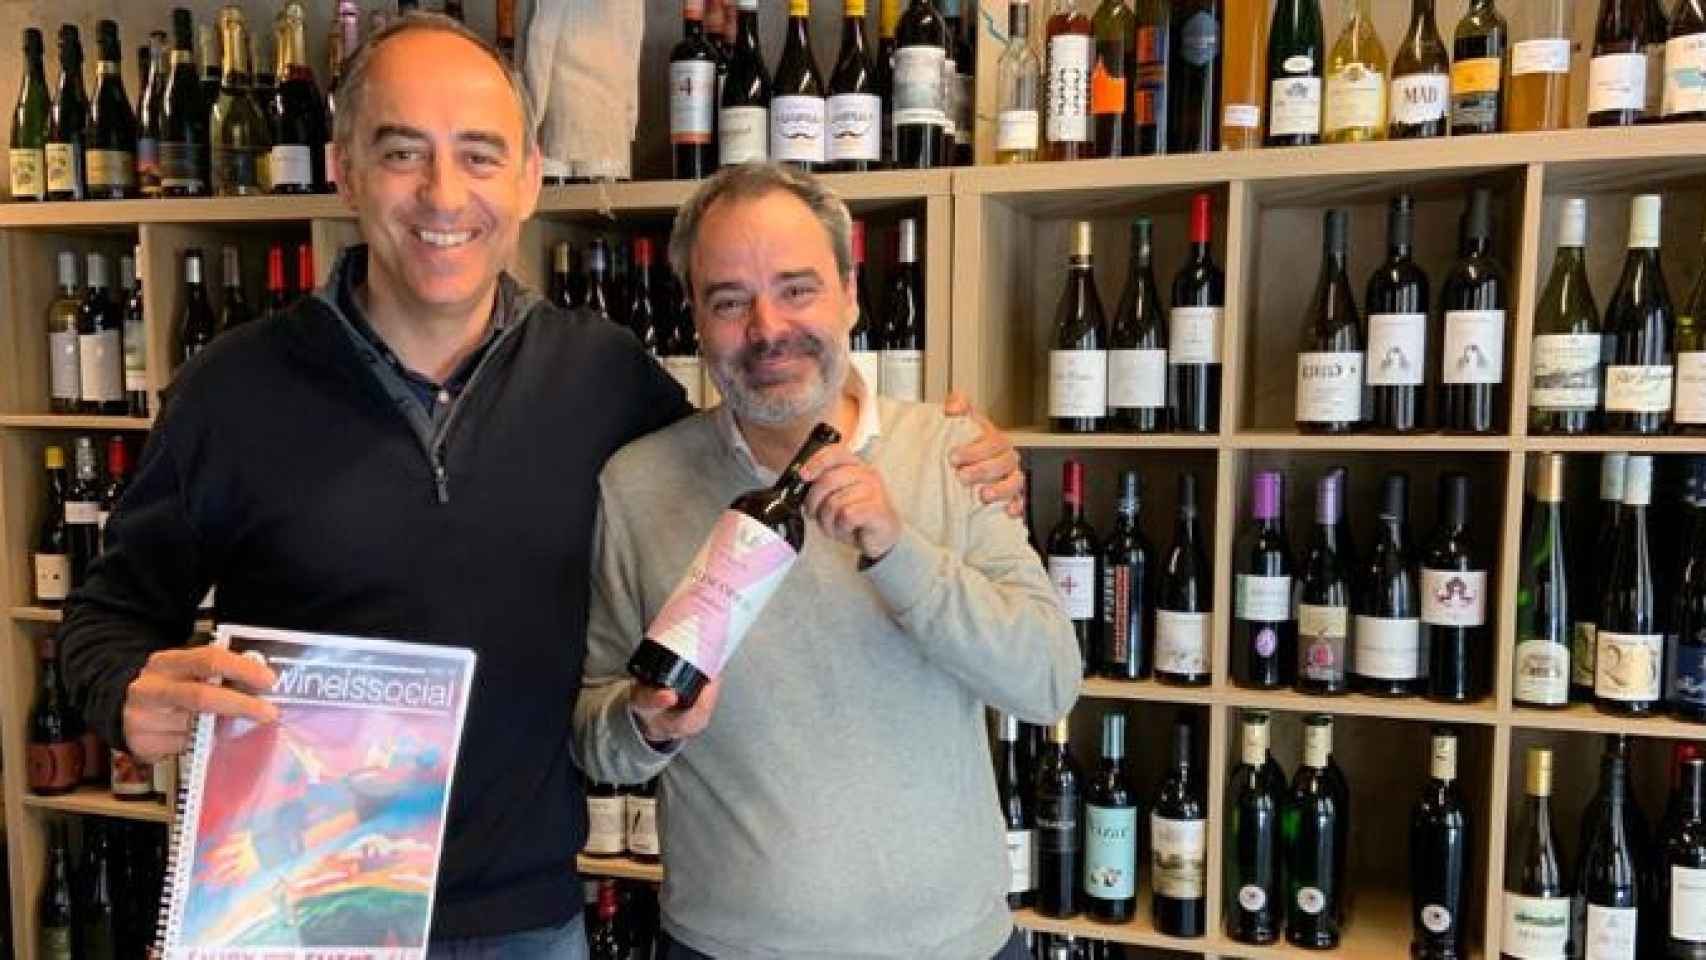 Albert Martí (i) y Manel Sarasa (d), los dos cofundadores del club del vino Wineissocial / CG